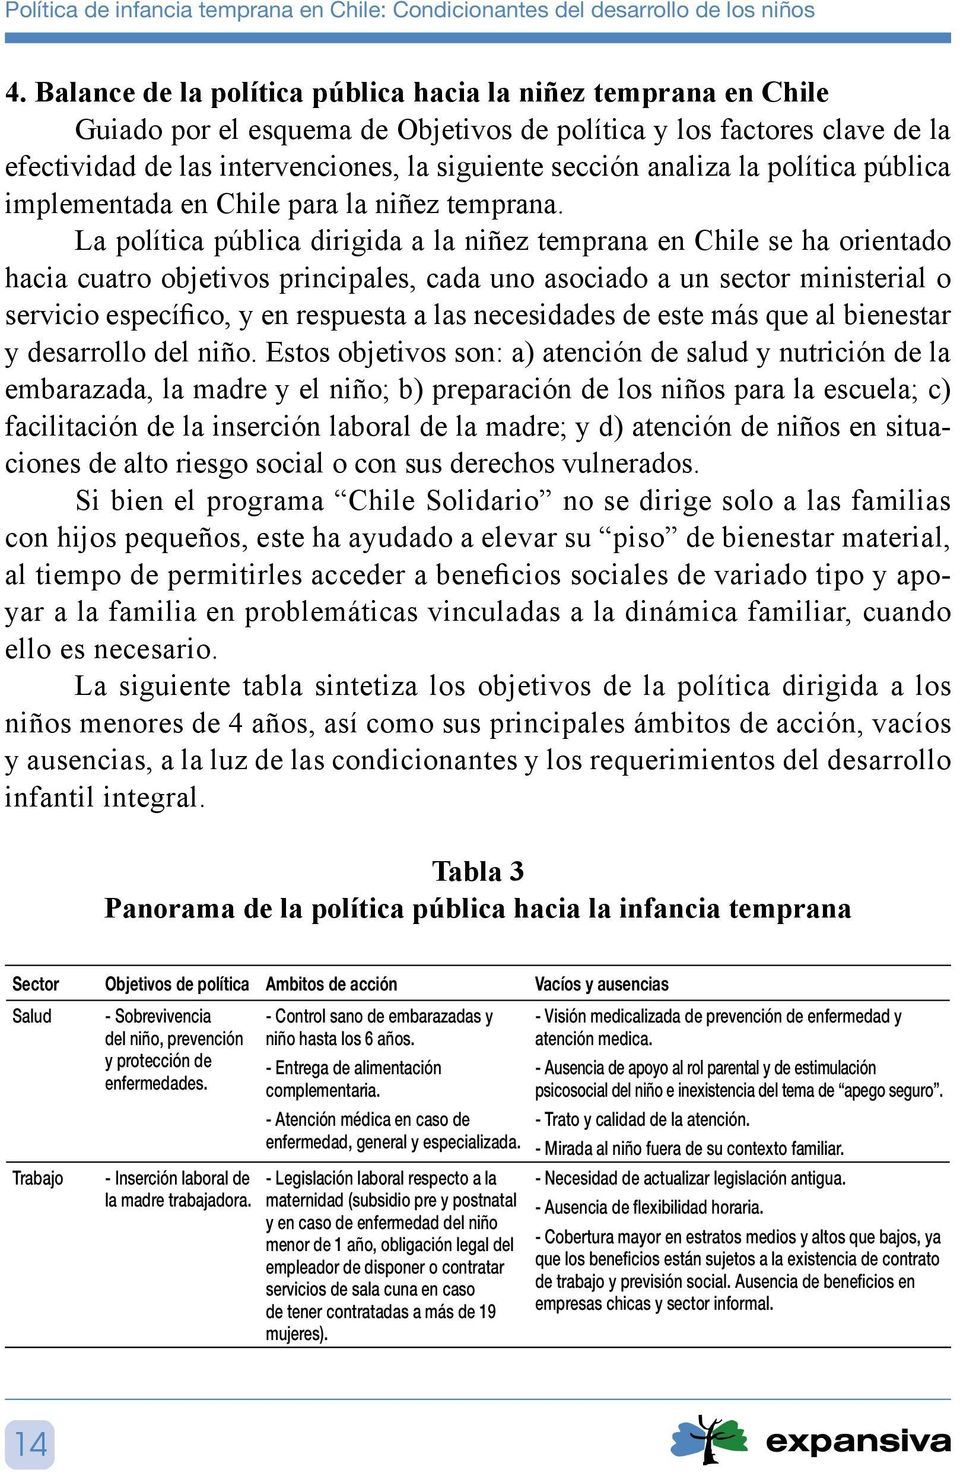 La política pública dirigida a la niñez temprana en Chile se ha orientado hacia cuatro objetivos principales, cada uno asociado a un sector ministerial o servicio específico, y en respuesta a las